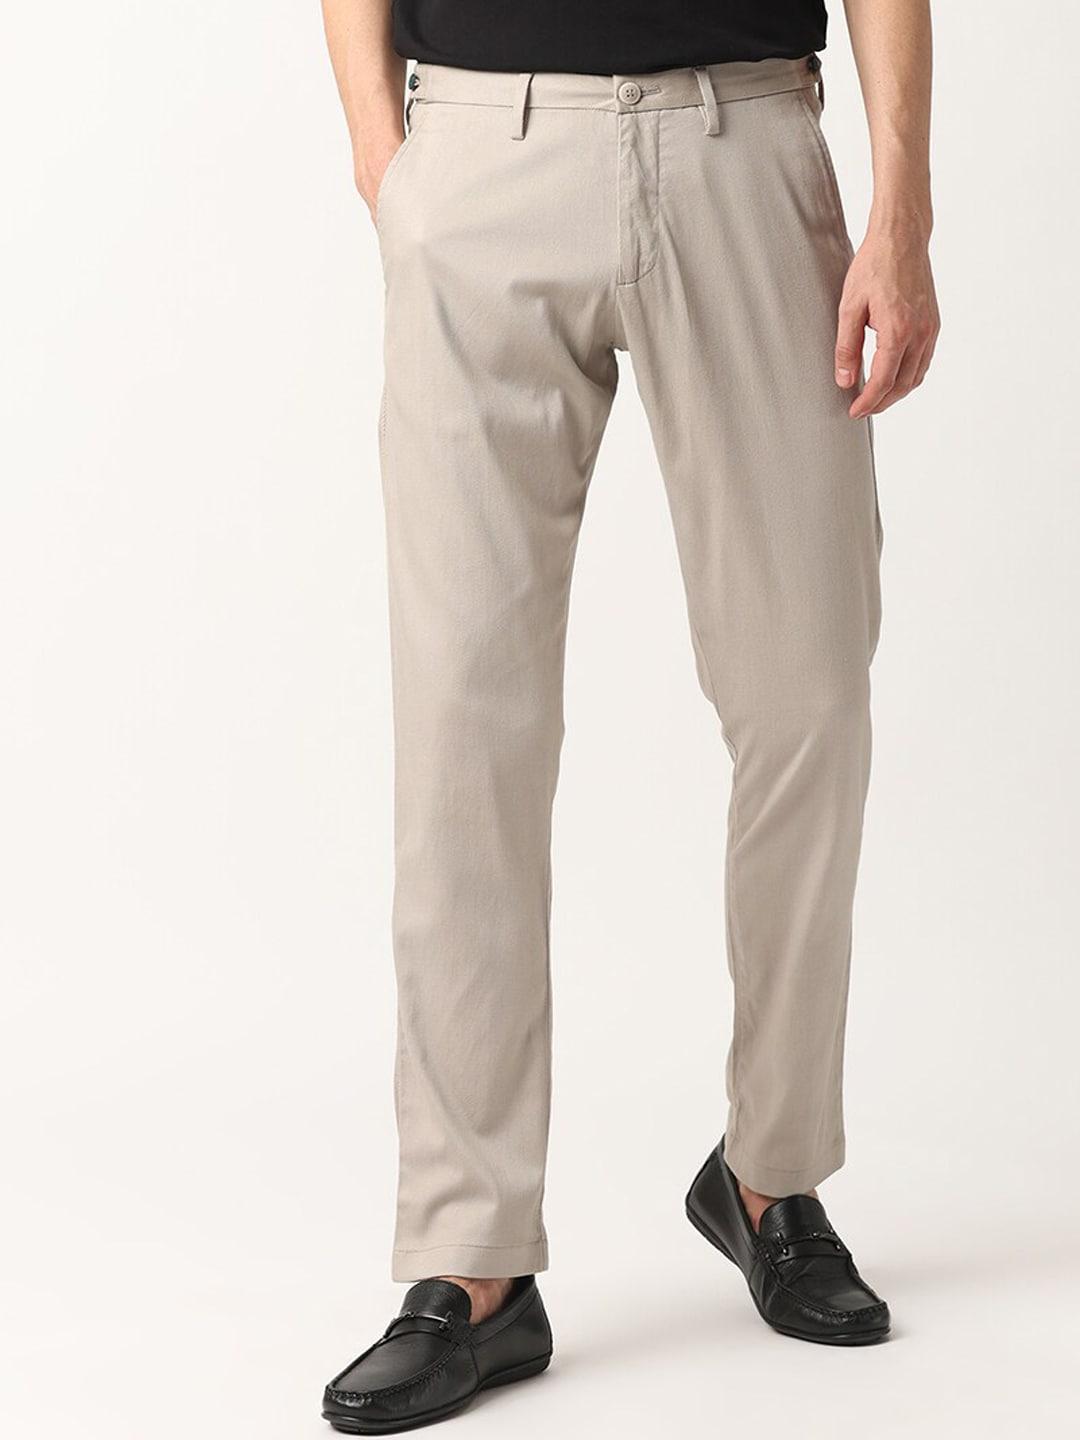 rare-rabbit-men-mid-rise-cotton-slim-fit-trousers